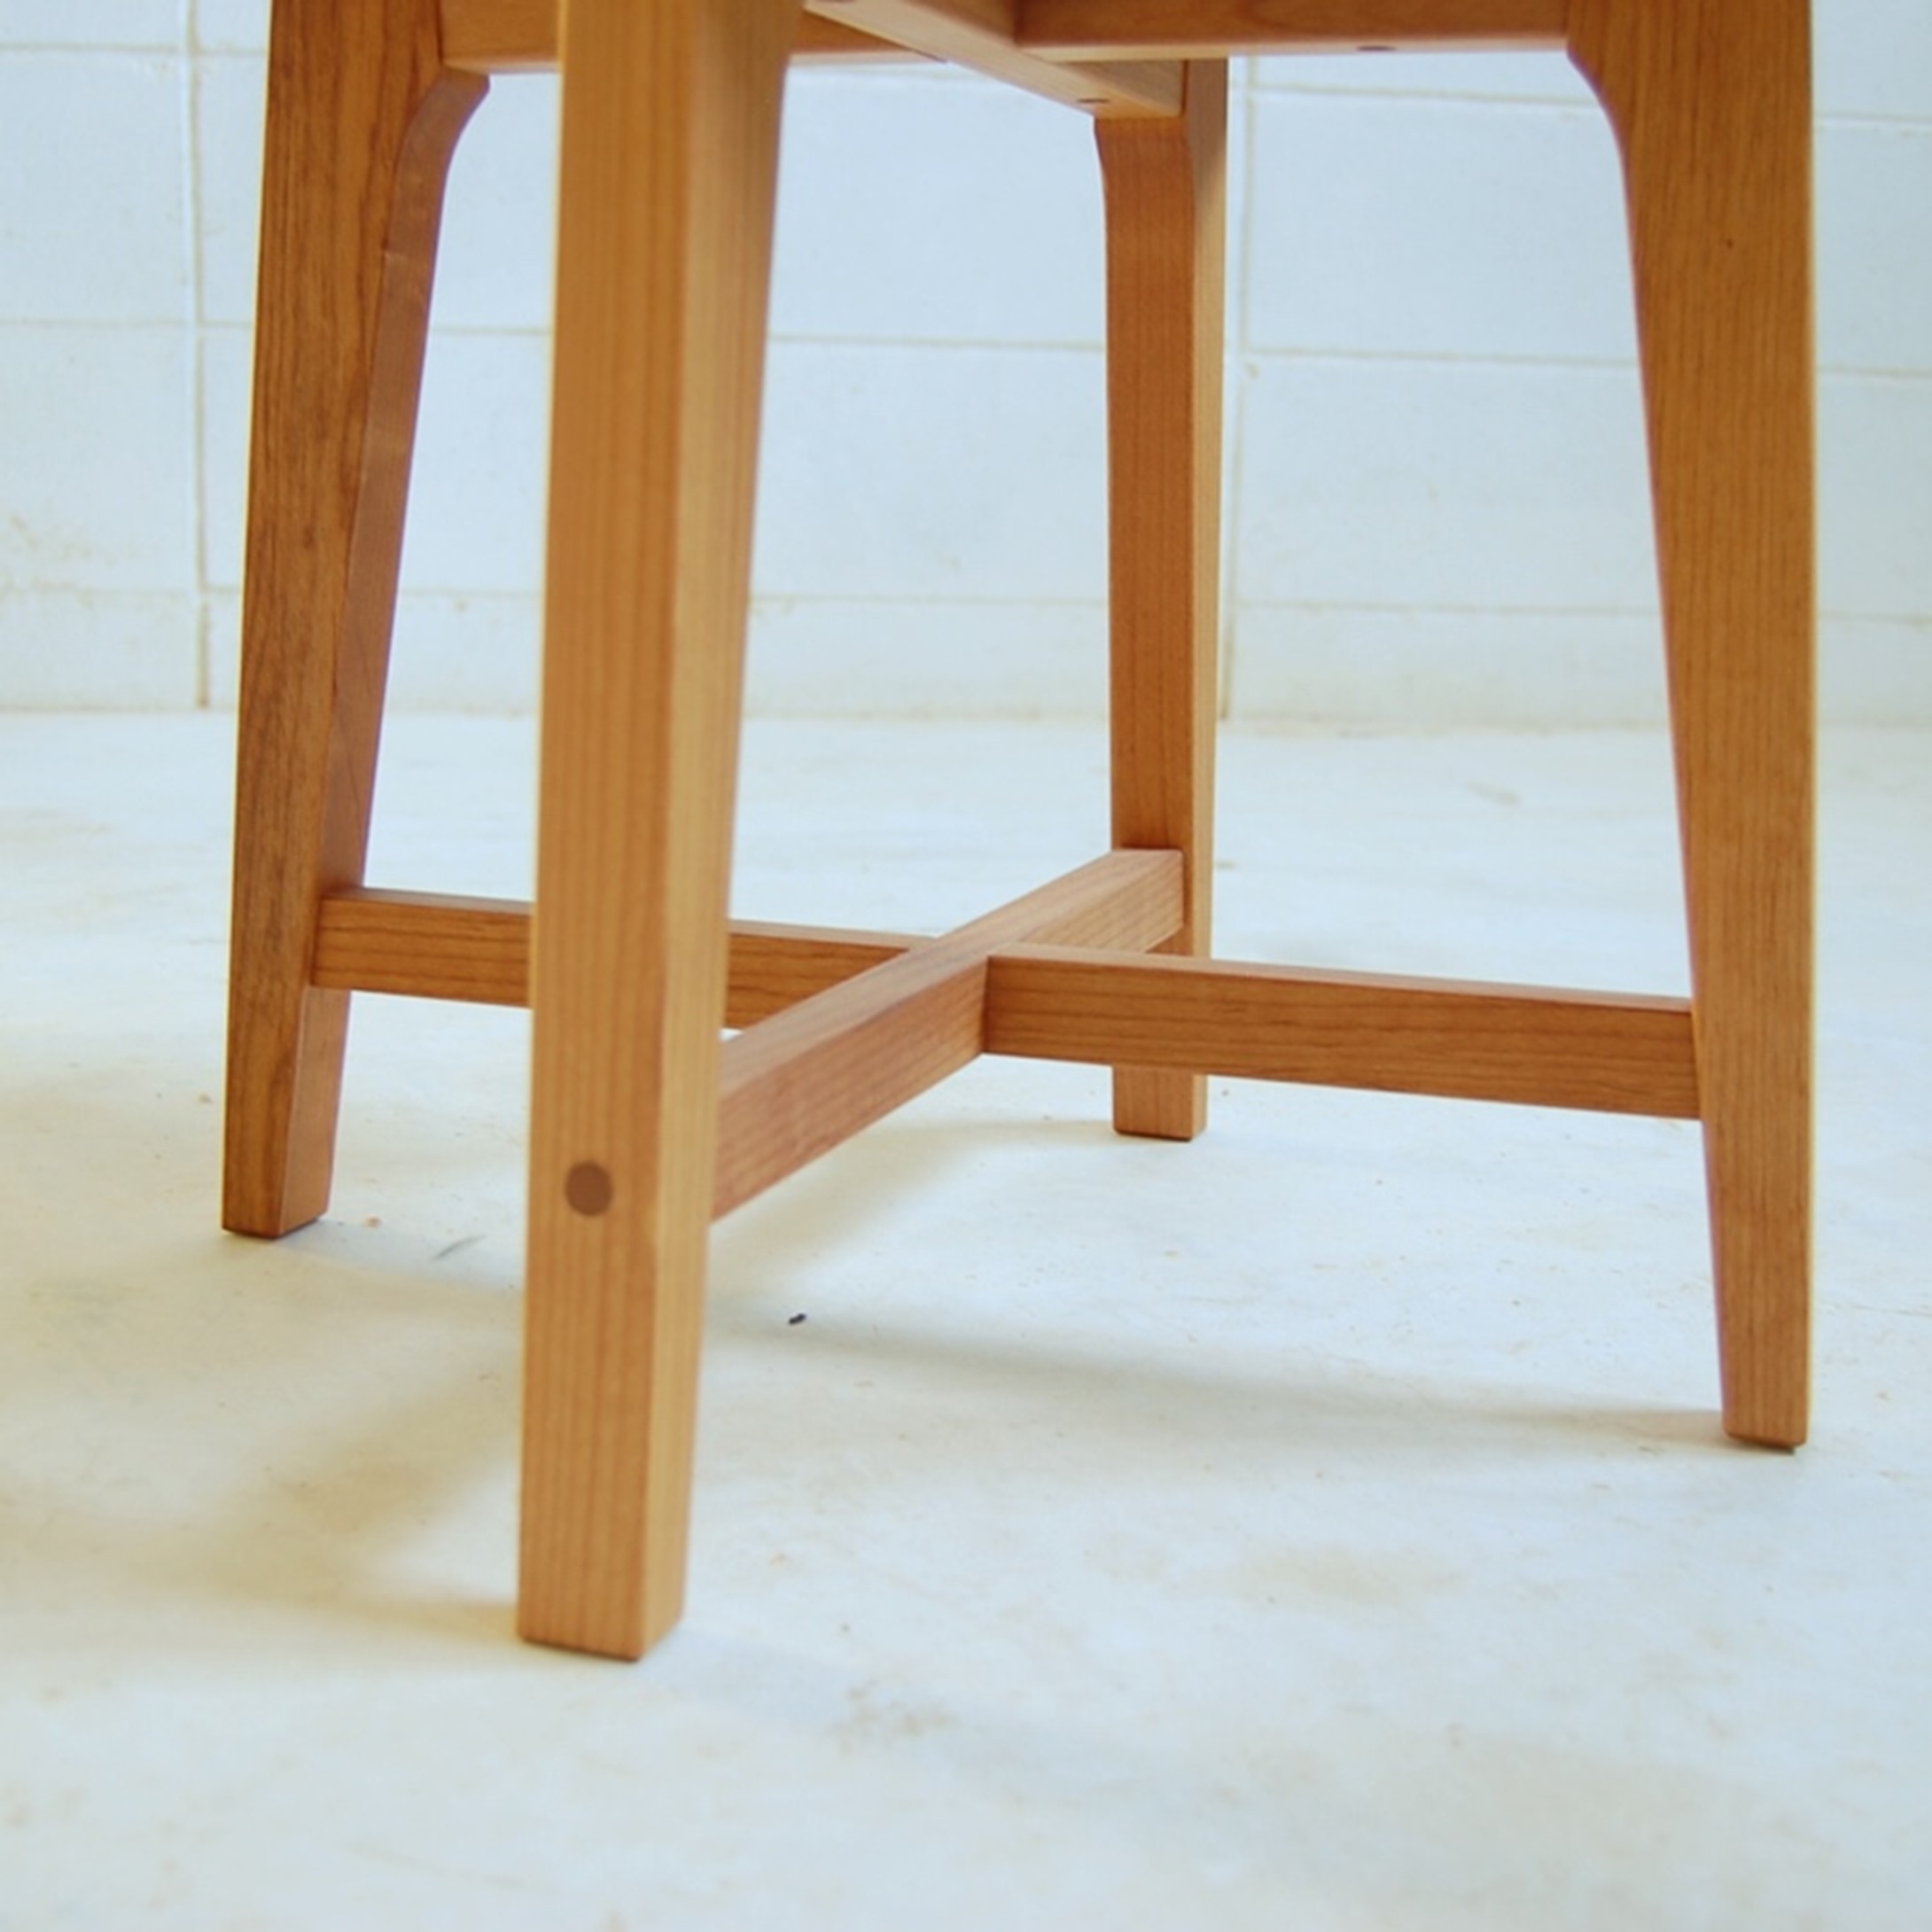 3本脚の丸テーブルと折れ脚ローテーブル。と、スツール